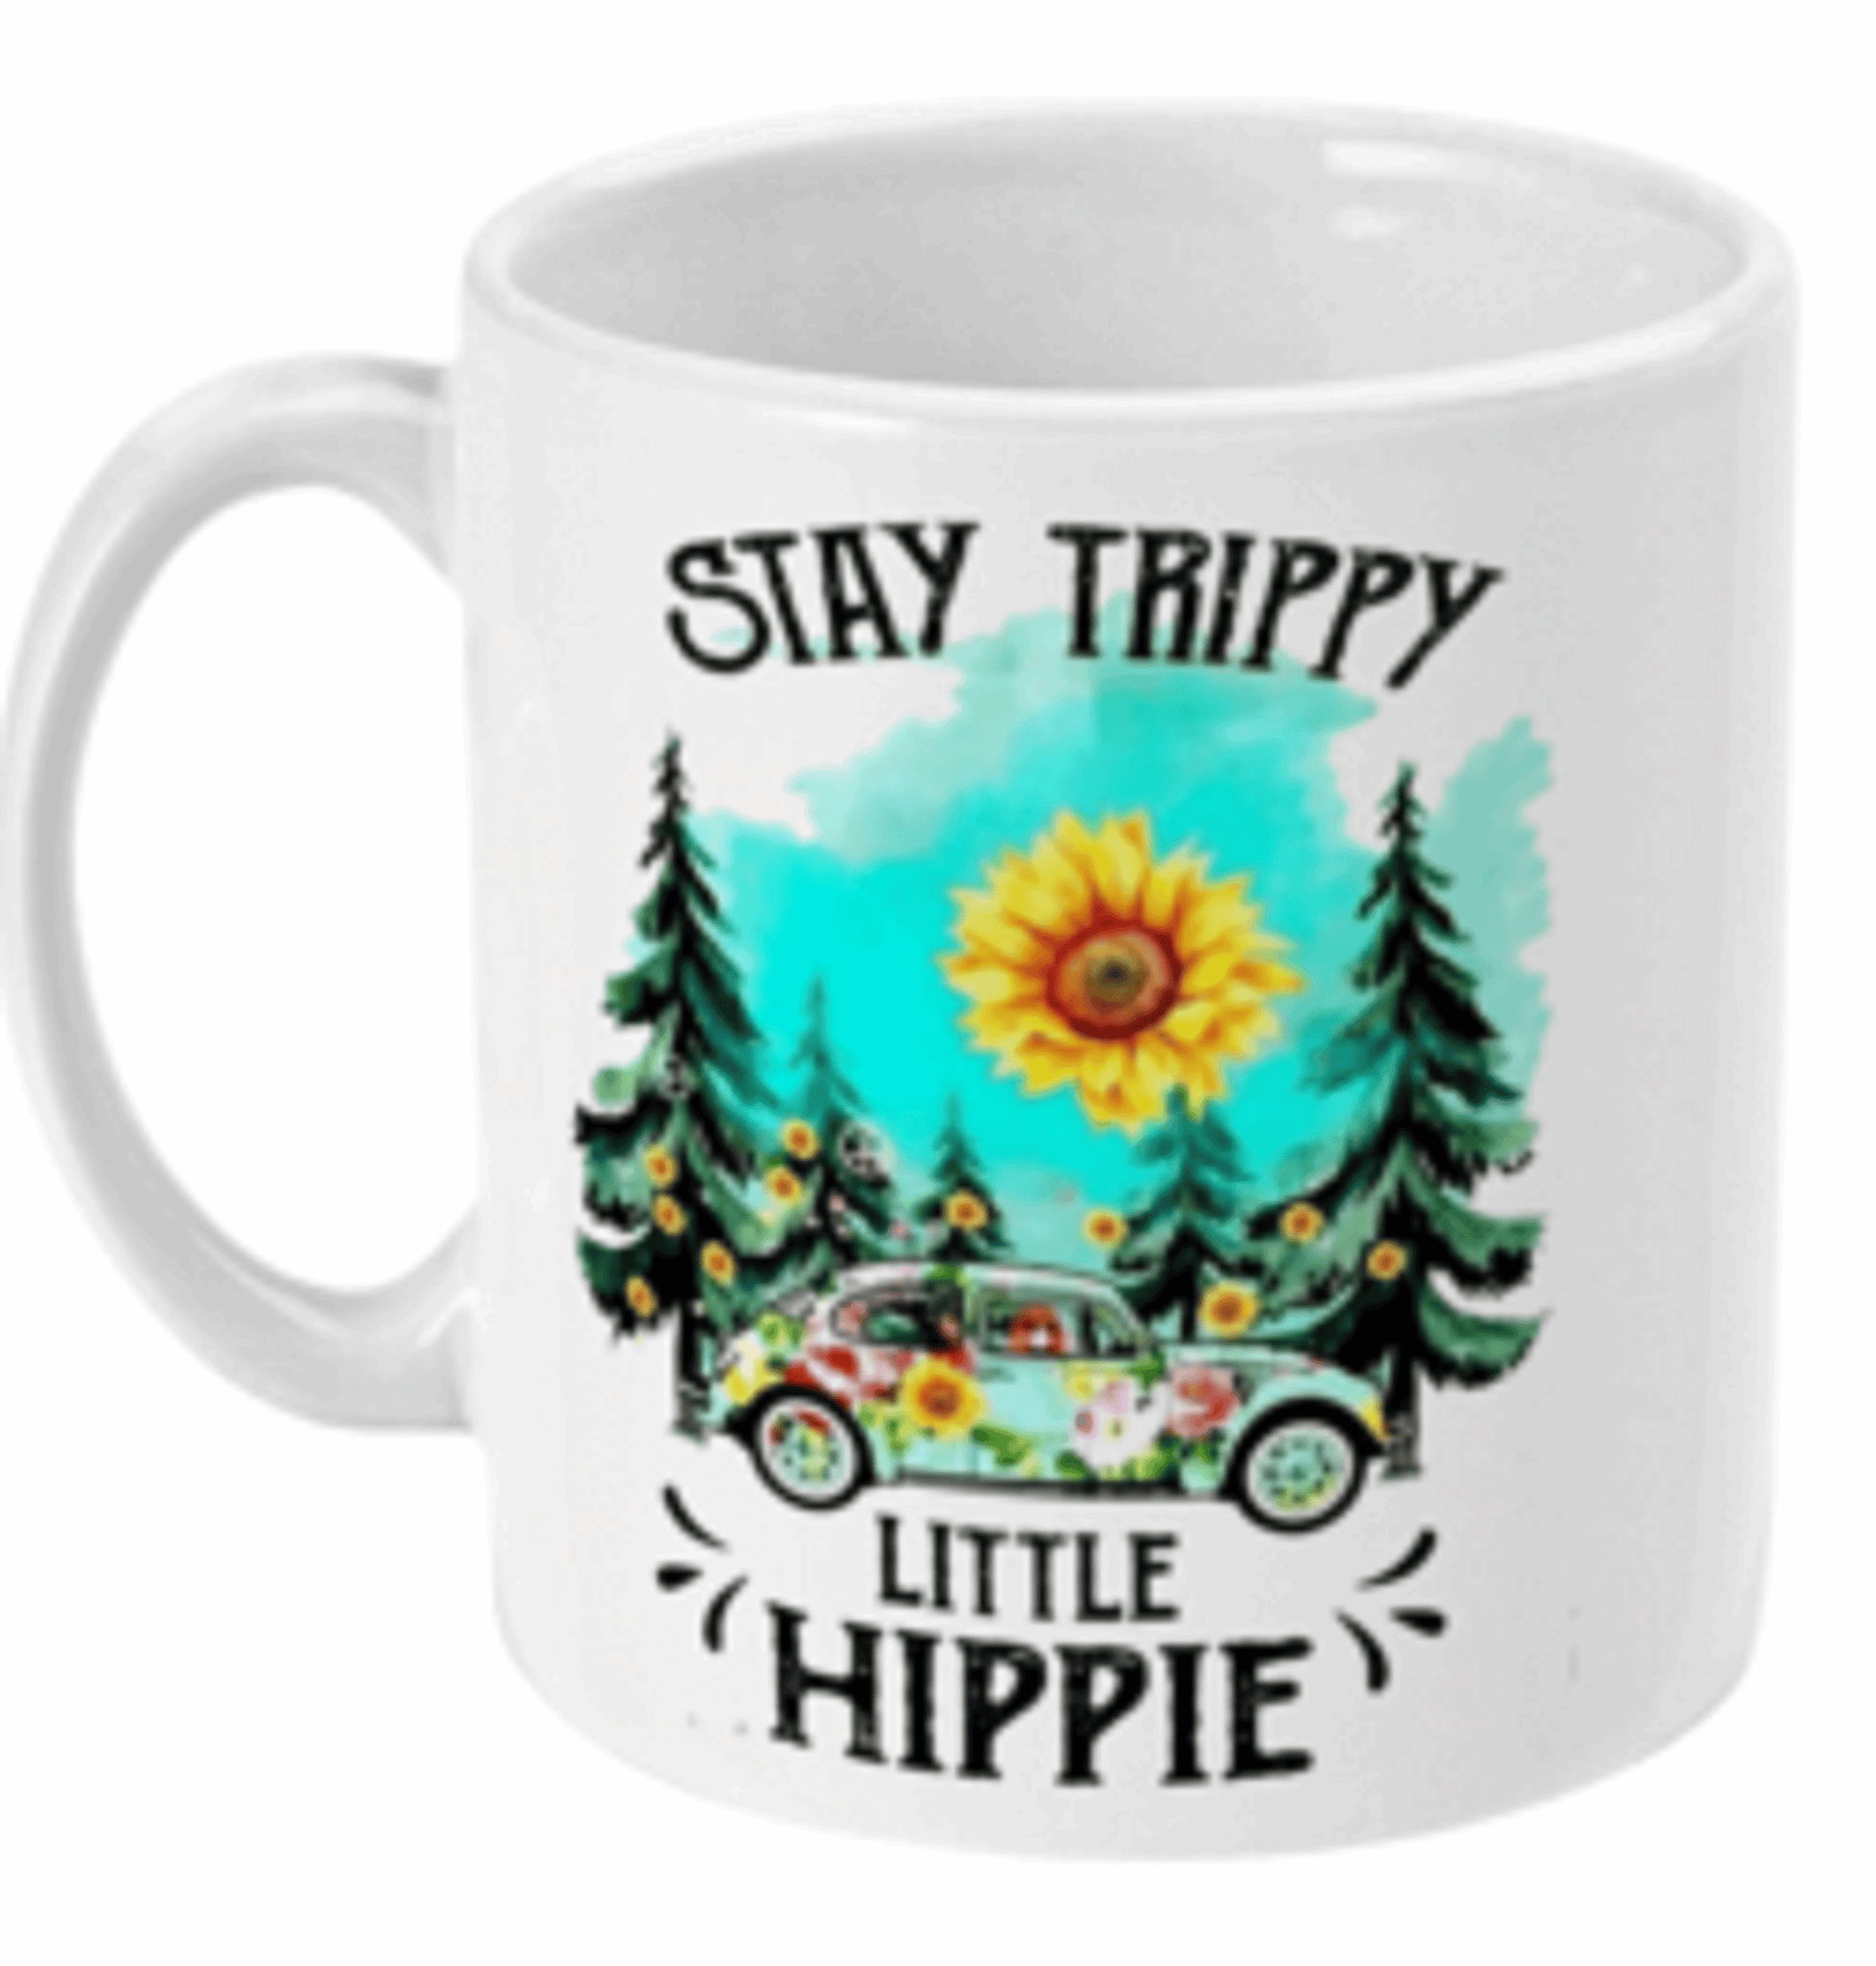  Stay Trippy Little Hippy Coffee Mug by Free Spirit Accessories sold by Free Spirit Accessories